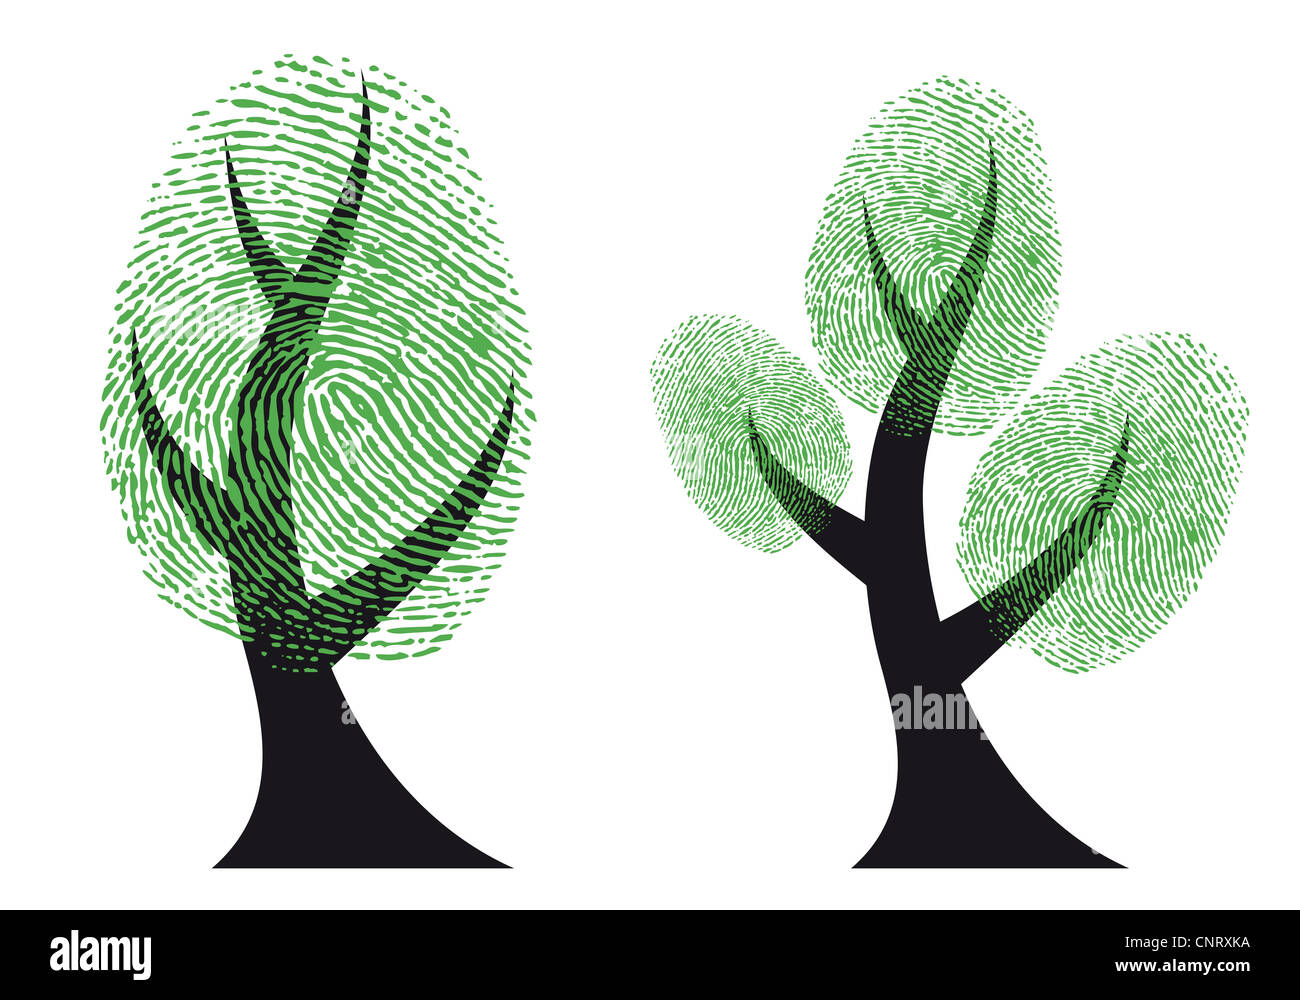 Baum mit grünen Fingerabdruck Blättern, Vektor-Hintergrund Stockfoto